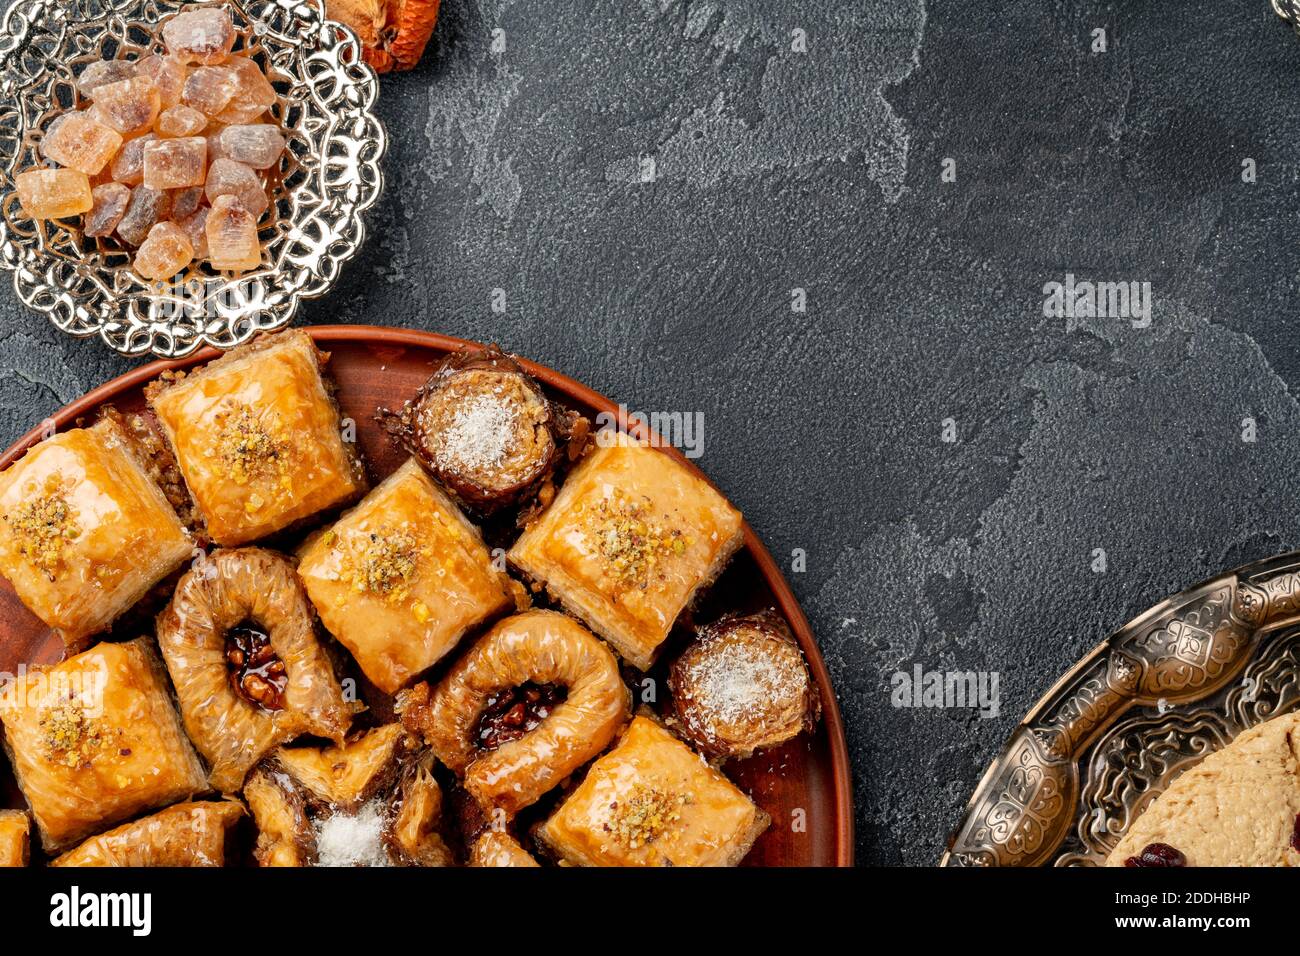 Assortment of turkish baklava on black textured surface Stock Photo